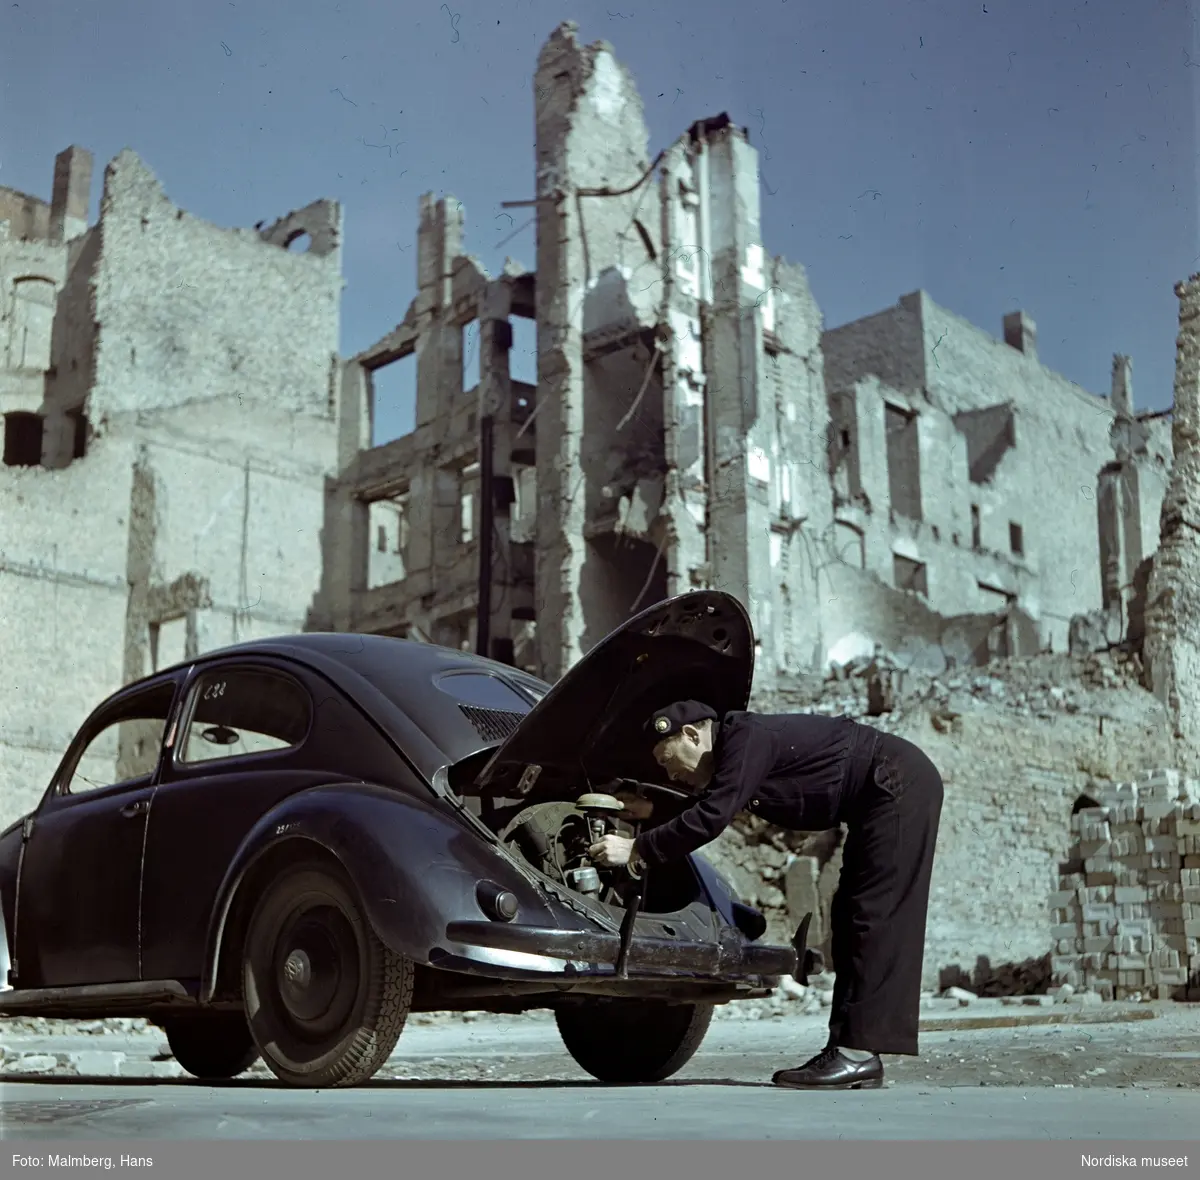 Berlin. En soldat ur de brittiska ockupationstrupperna kontrollerar motorn på en Volkswagen. Husruiner i bakgrunden.